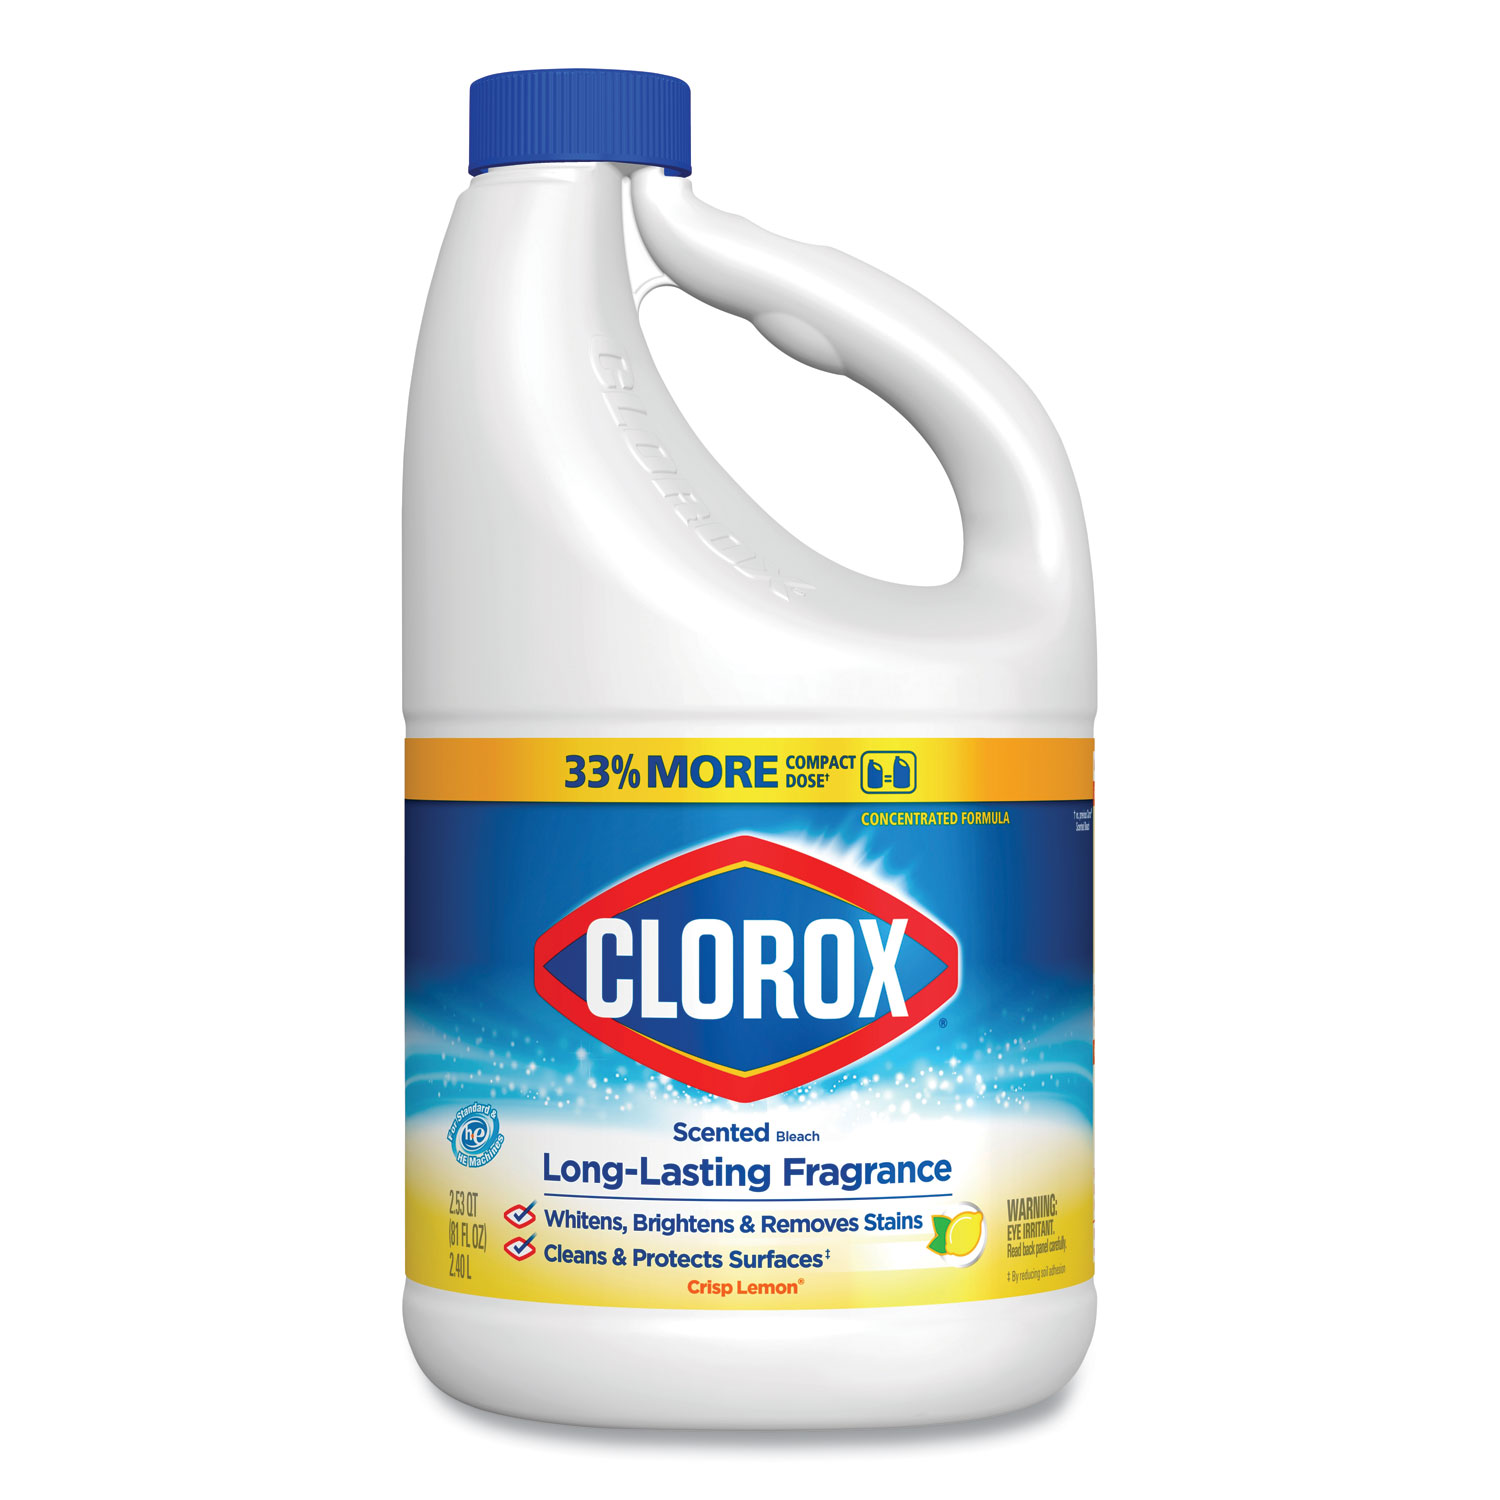  Clorox CLO32320 Bleach with CloroMax Technology, Crisp Lemon Scent, 81 oz Bottle, 6/Carton (CLO32320) 